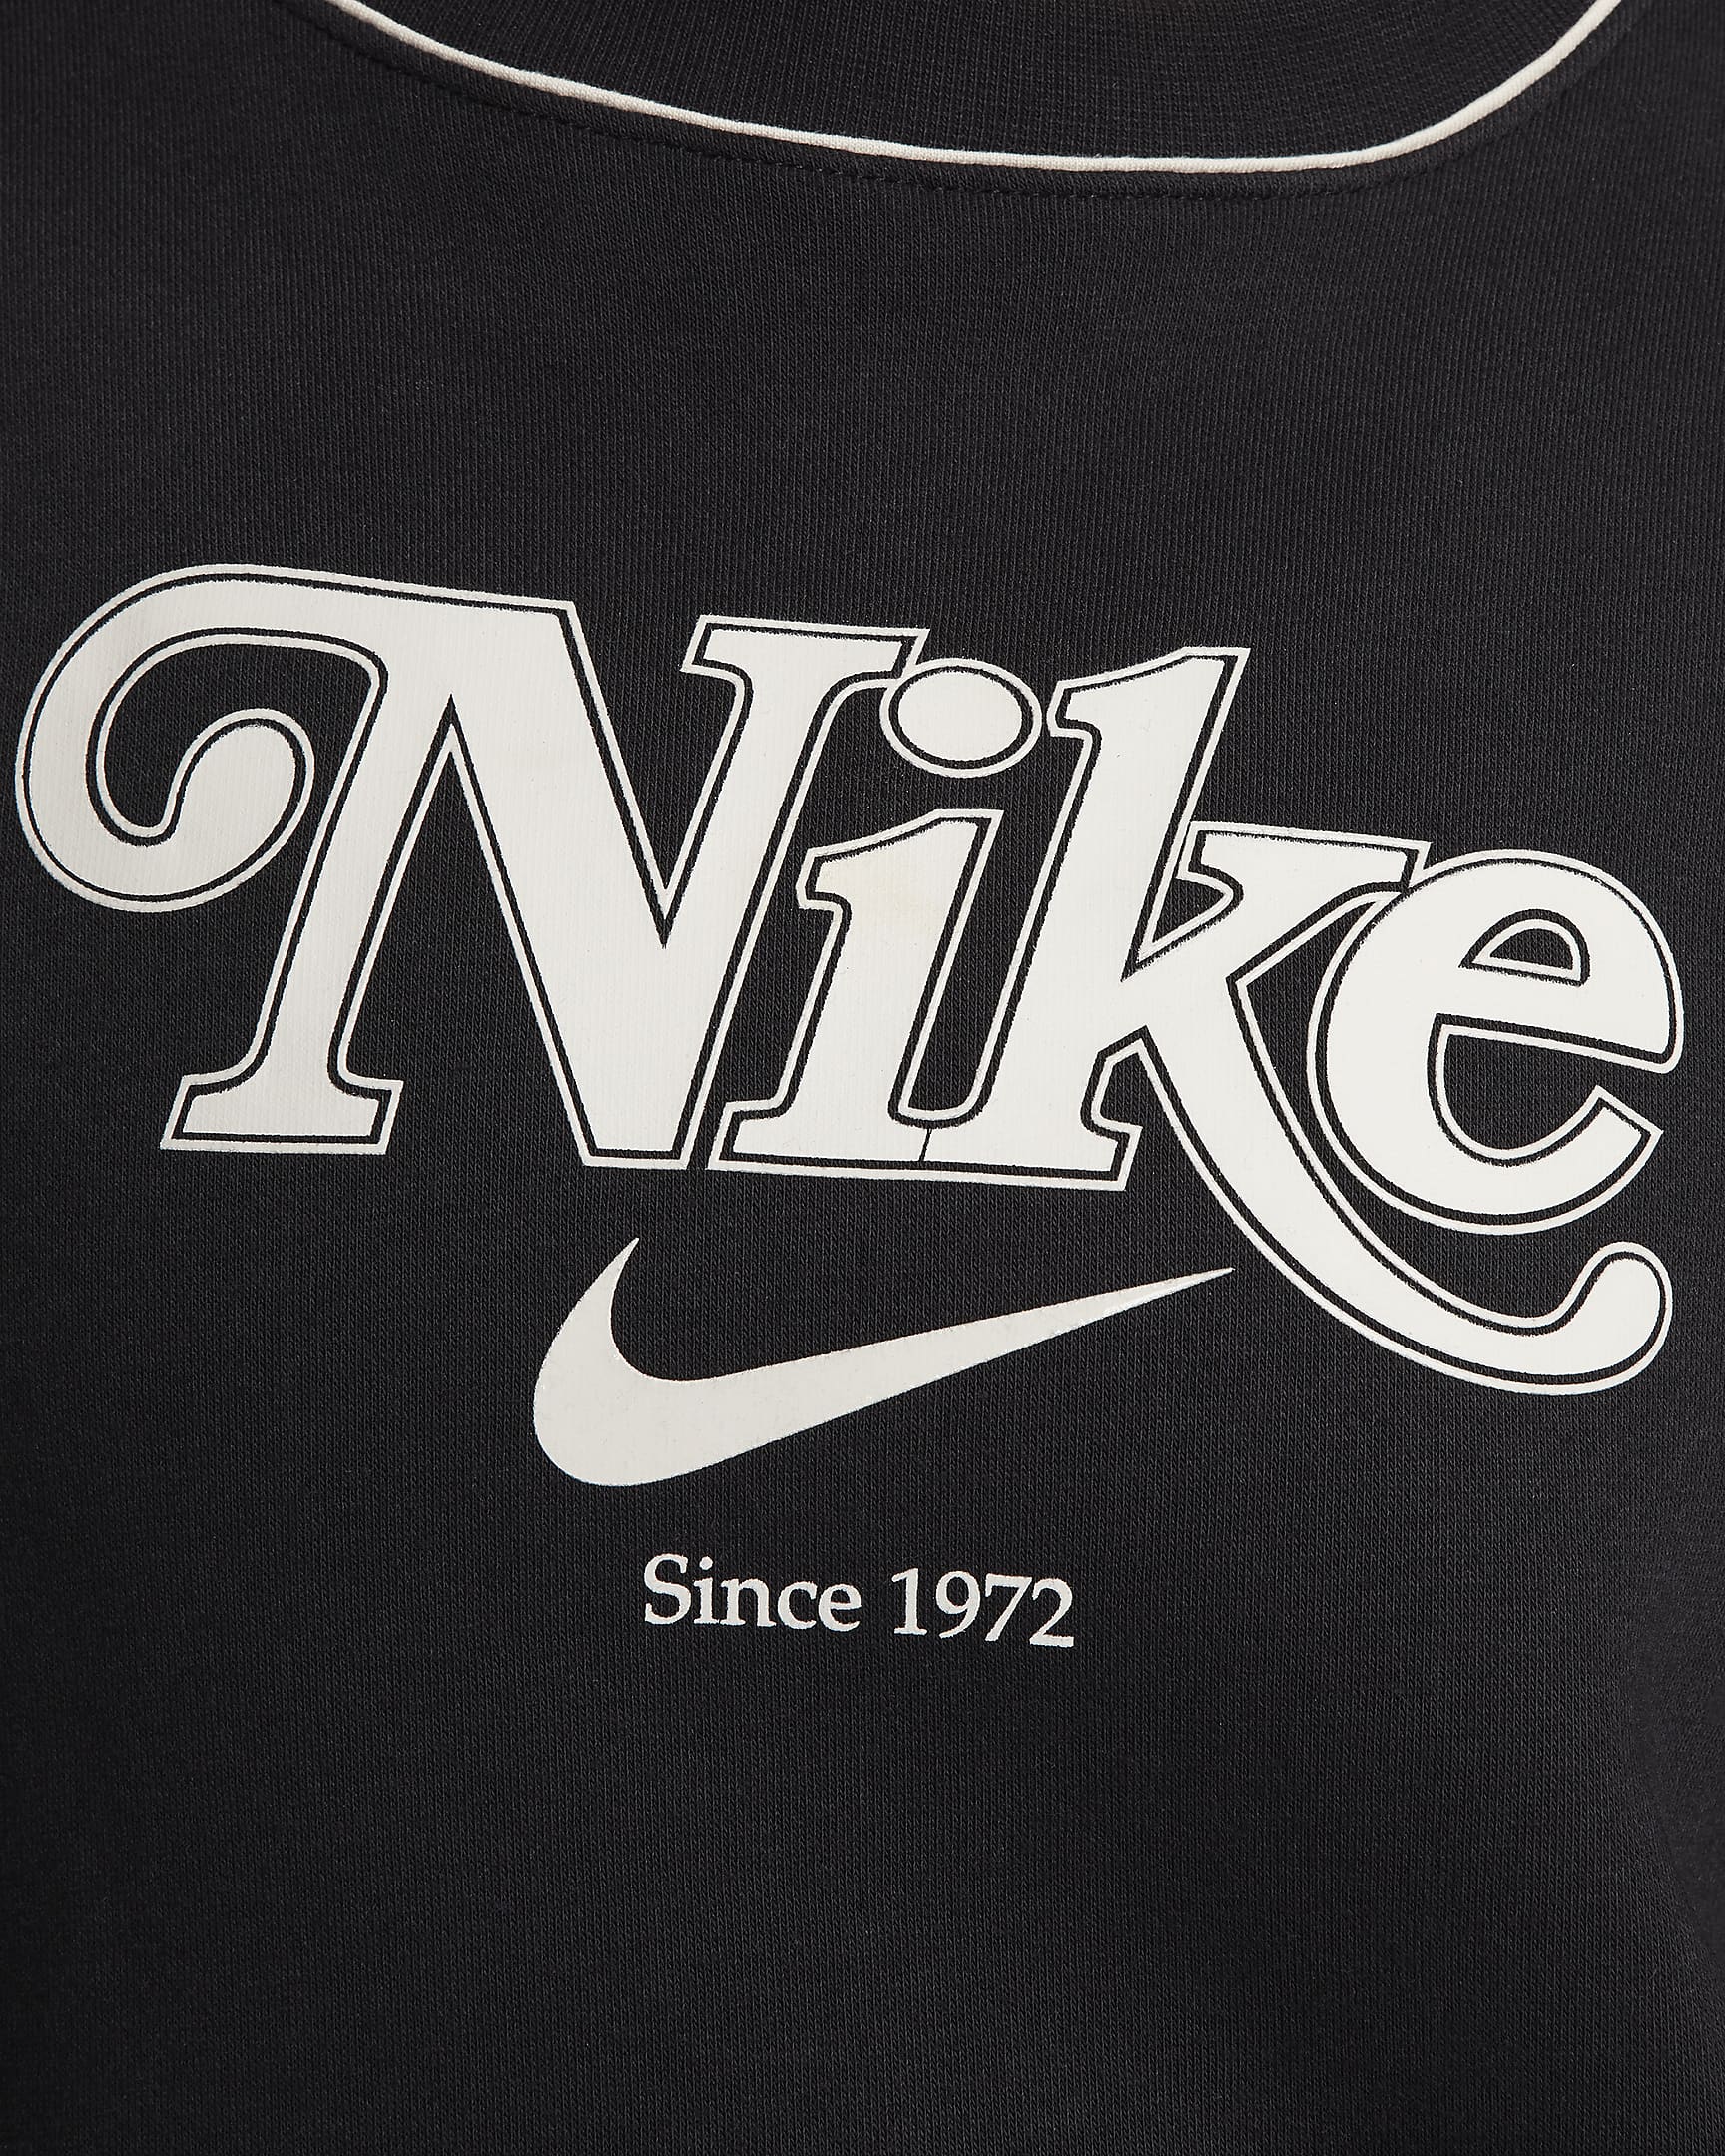 Nike Sportswear Women's Fleece Crew-Neck Sweatshirt. Nike BG